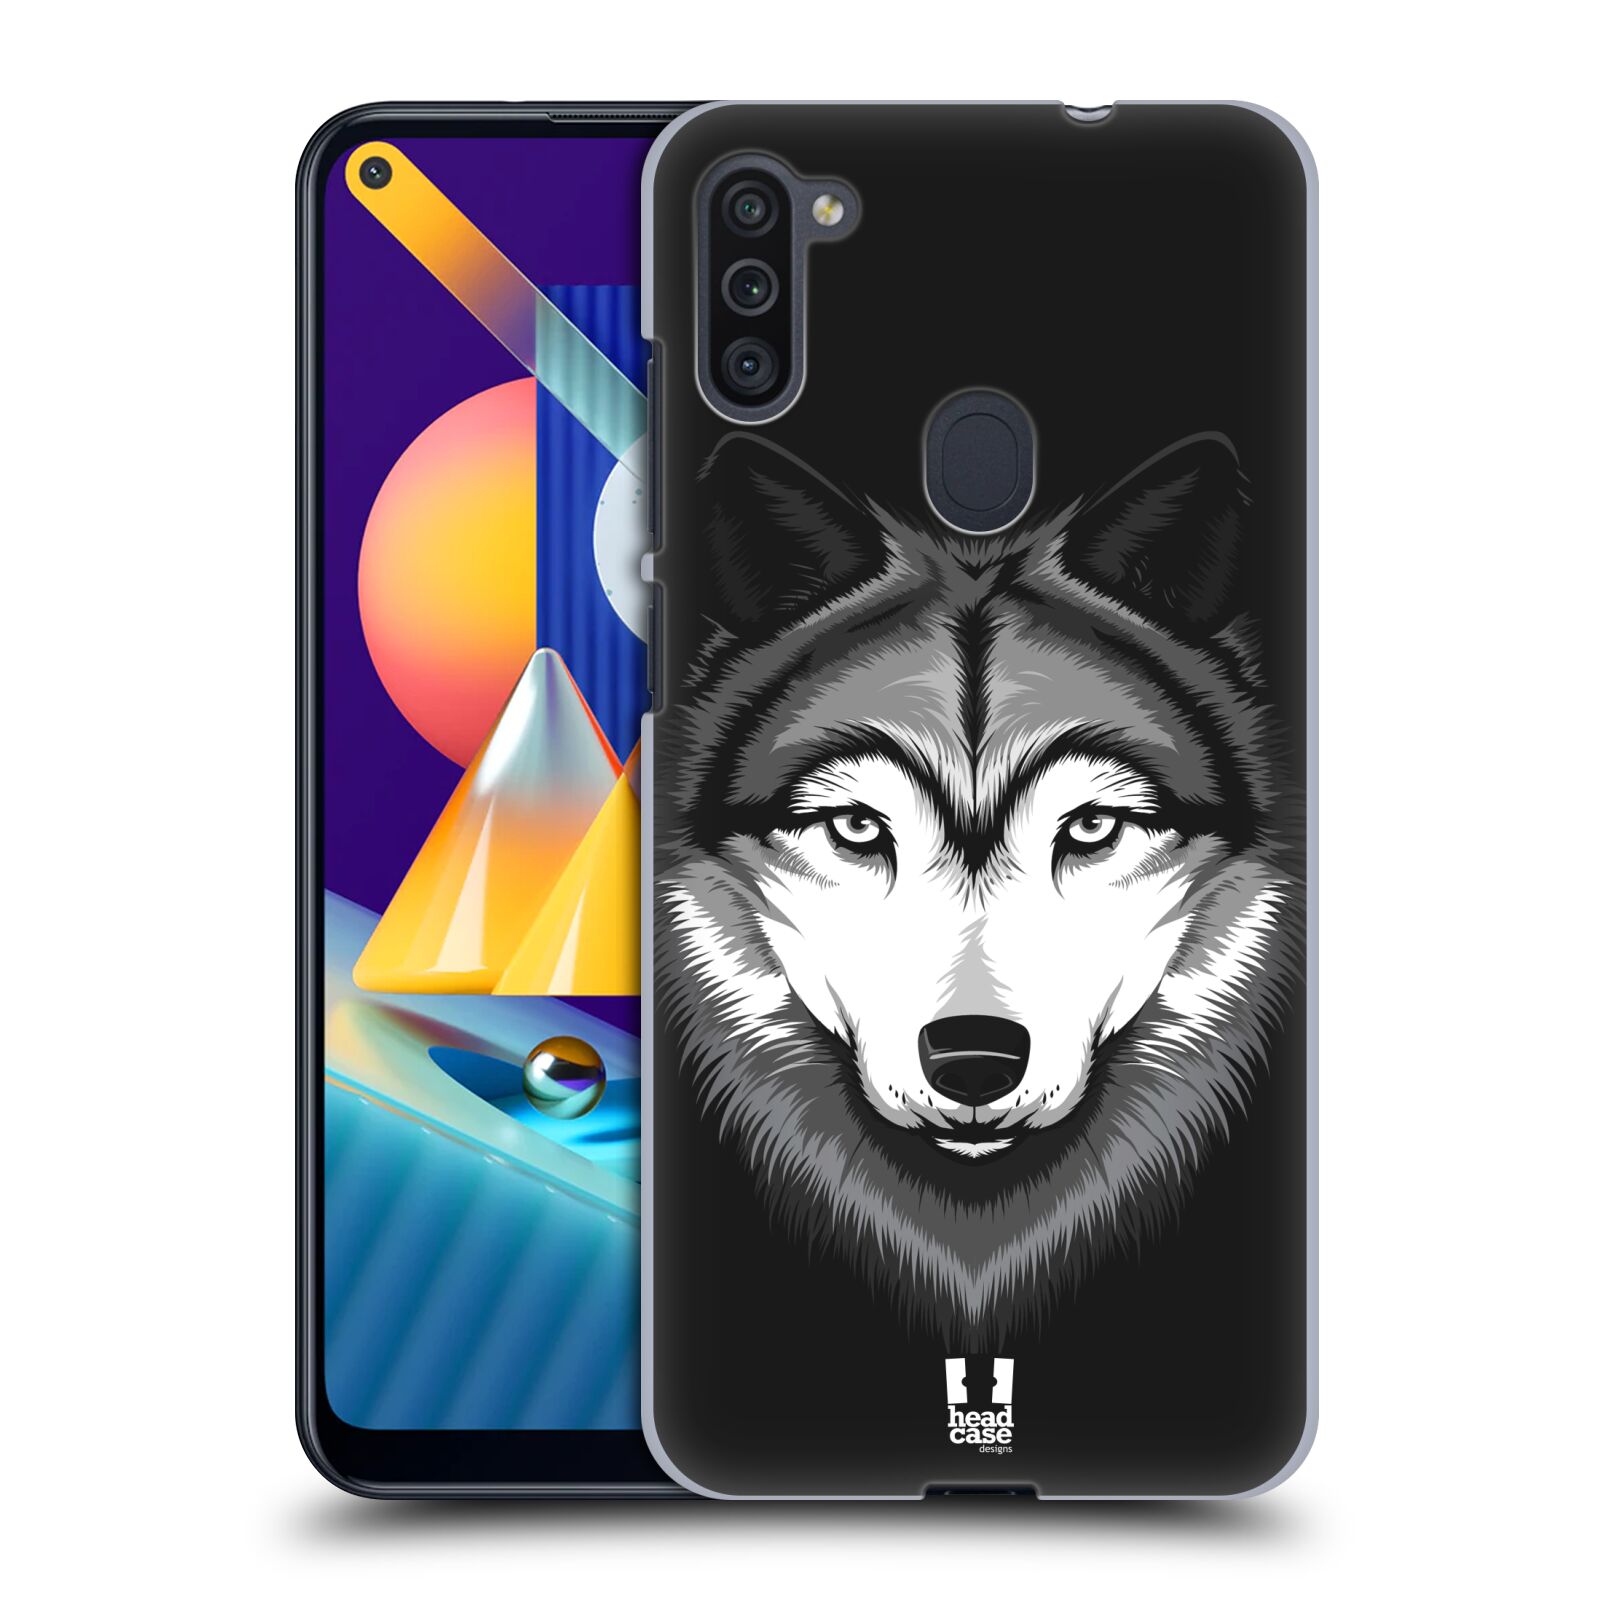 Plastový obal HEAD CASE na mobil Samsung Galaxy M11 vzor Zvíře kreslená tvář 2 vlk